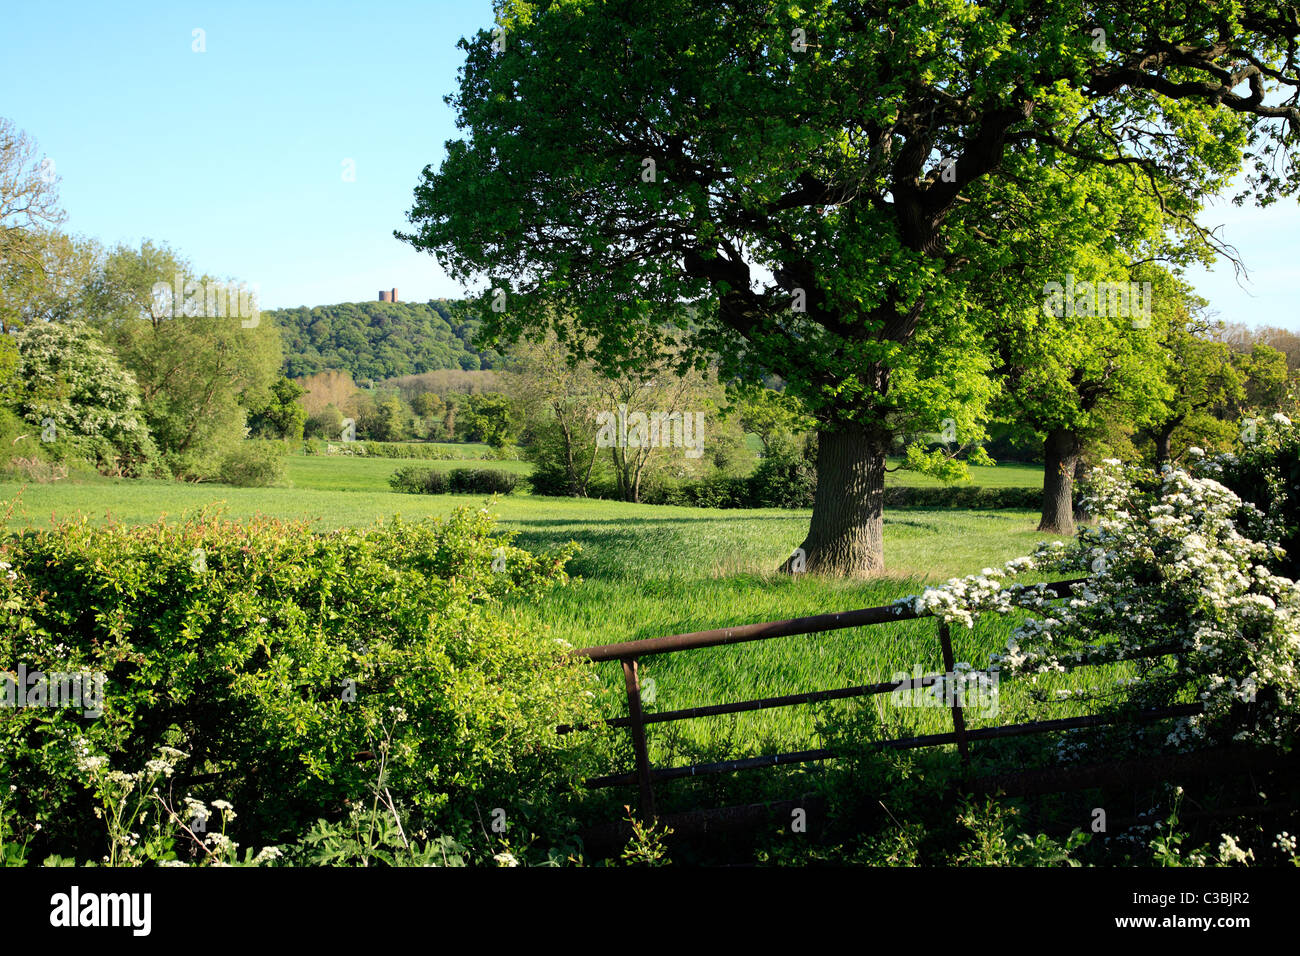 Cheshire Landschaft Beeston England UK Vereinigtes Königreich EU Europäische Union Europa Stockfoto